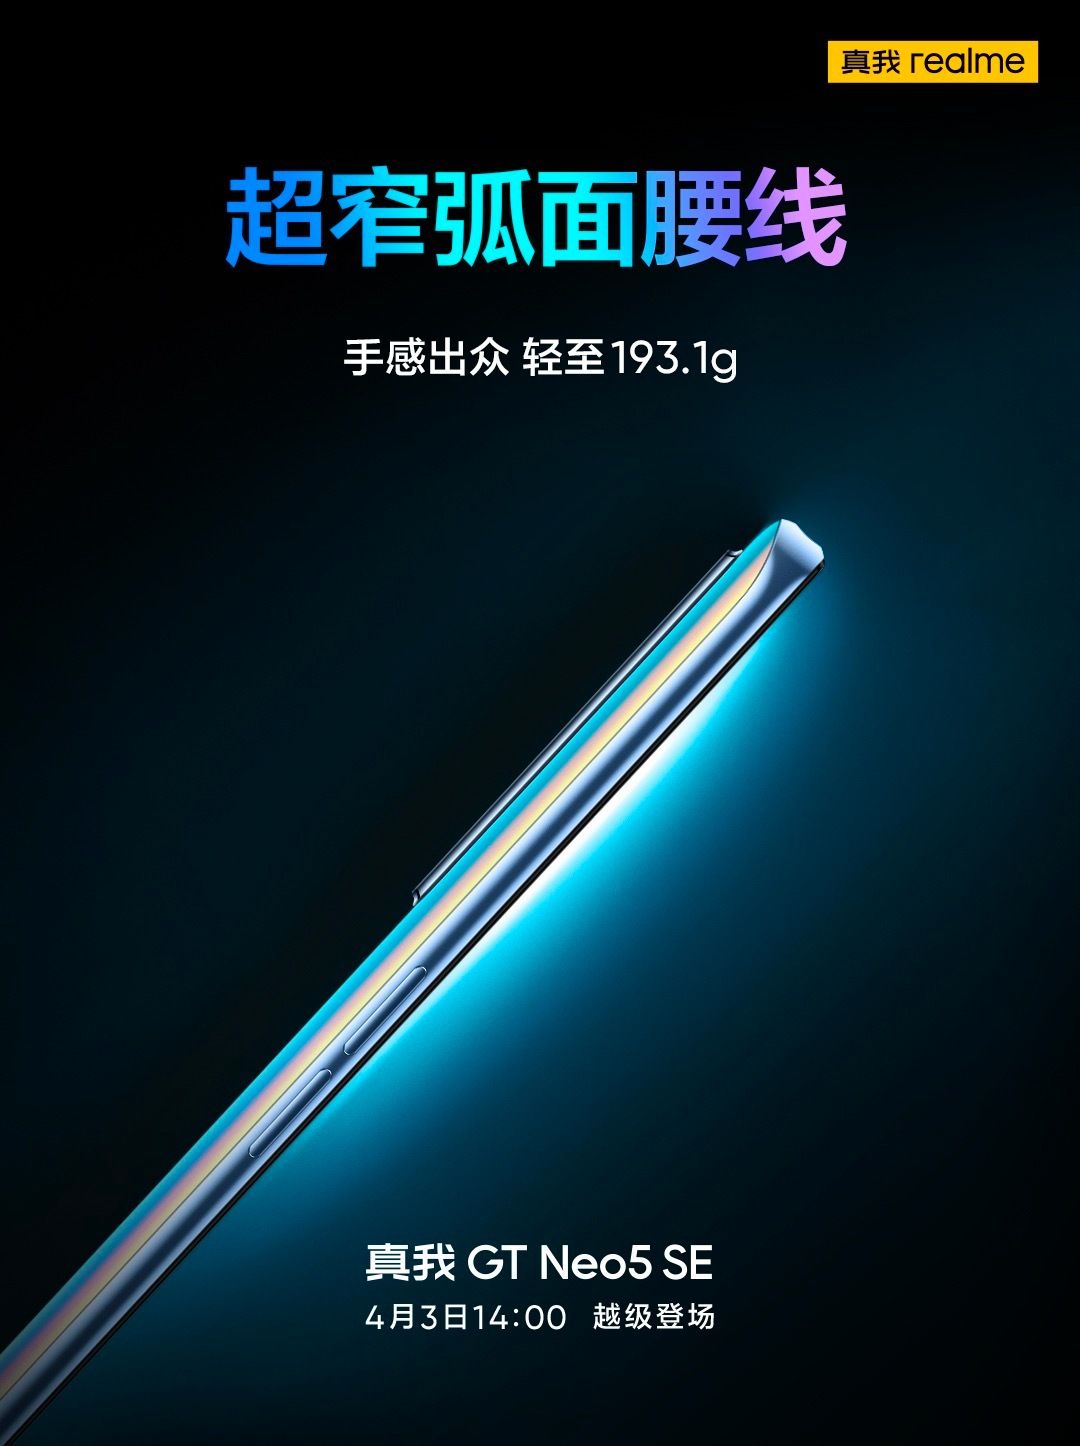 realme GT Neo5 SE มาแน่! ยืนยันใช้ชิป Snapdragon 7+ Gen 2 เคาะวันเปิดตัว 3 เมษายนนี้